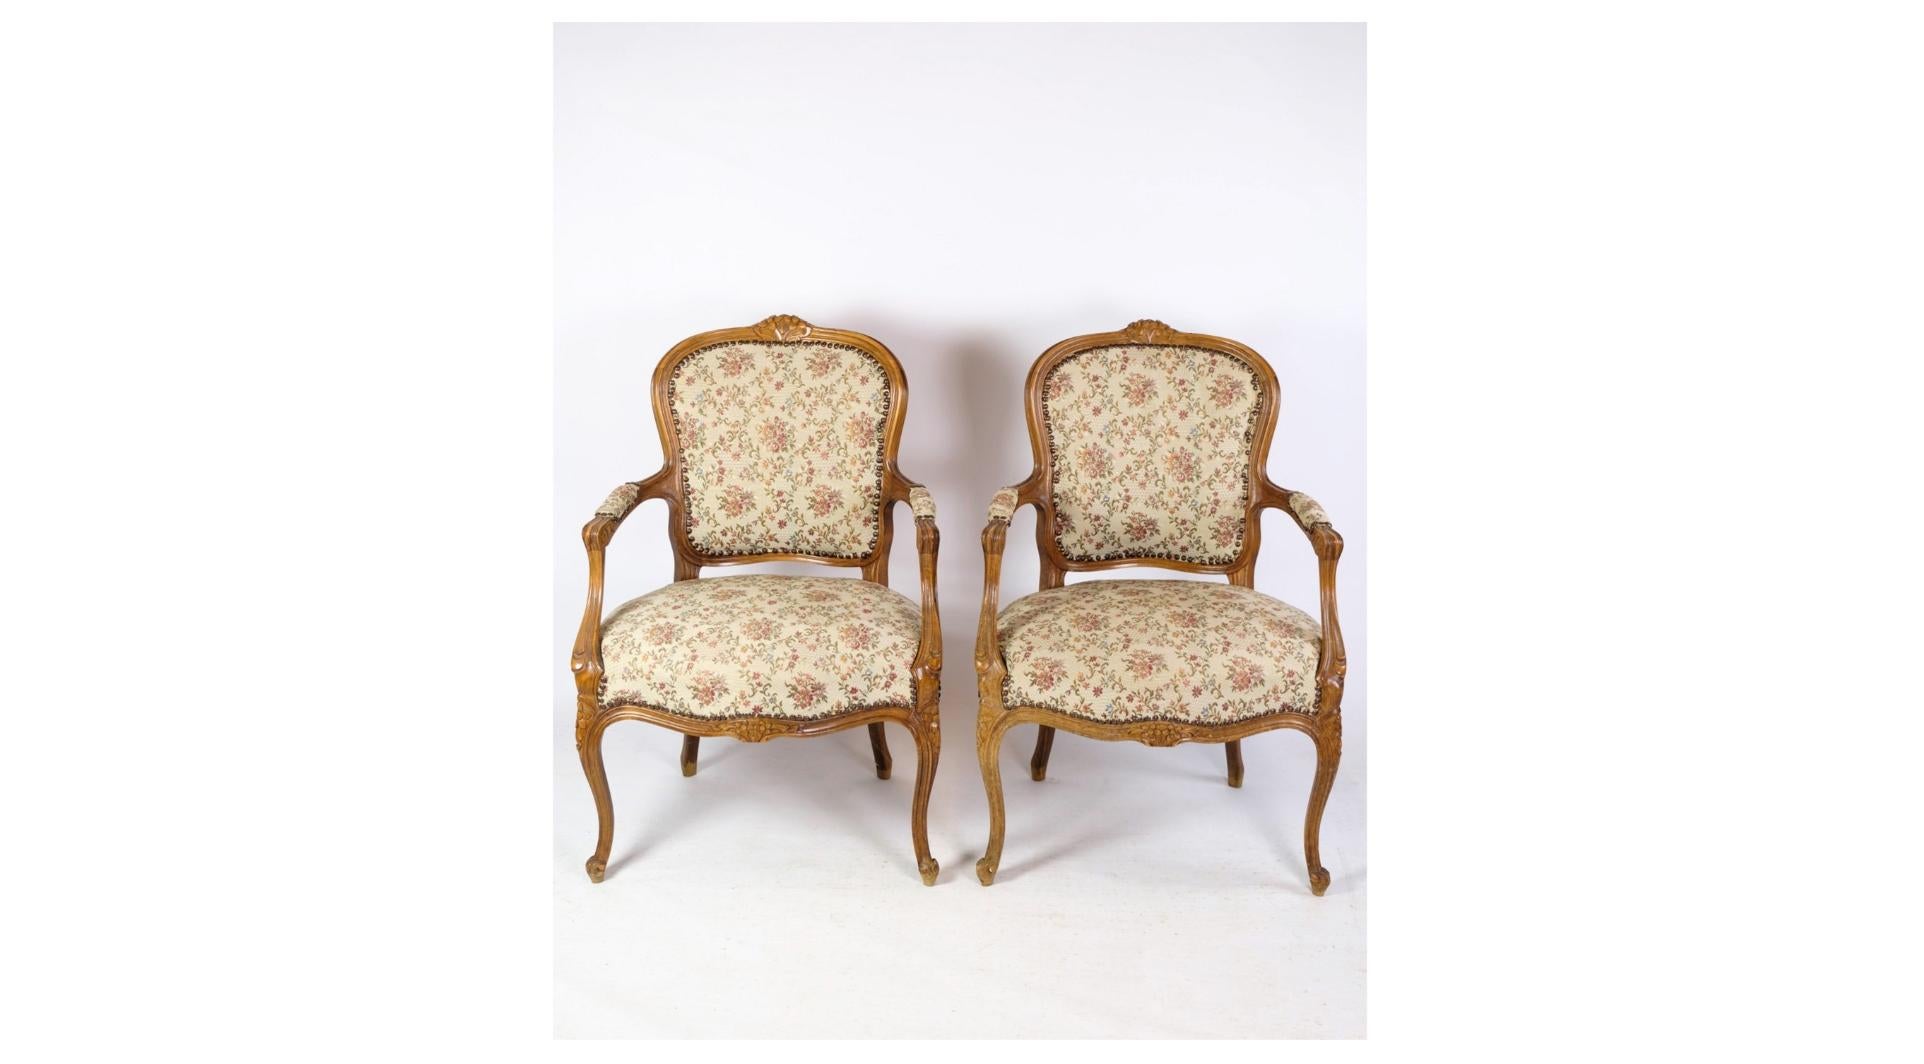 Ein Paar Neo-Rokoko-Sessel mit dekorativem hellem Holzstoff aus den 1930er Jahren ist eine schöne Darstellung des Möbeldesigns und der Ästhetik des frühen 20. Jahrhunderts. Diese Stühle verbinden Eleganz und Raffinesse mit einer subtilen